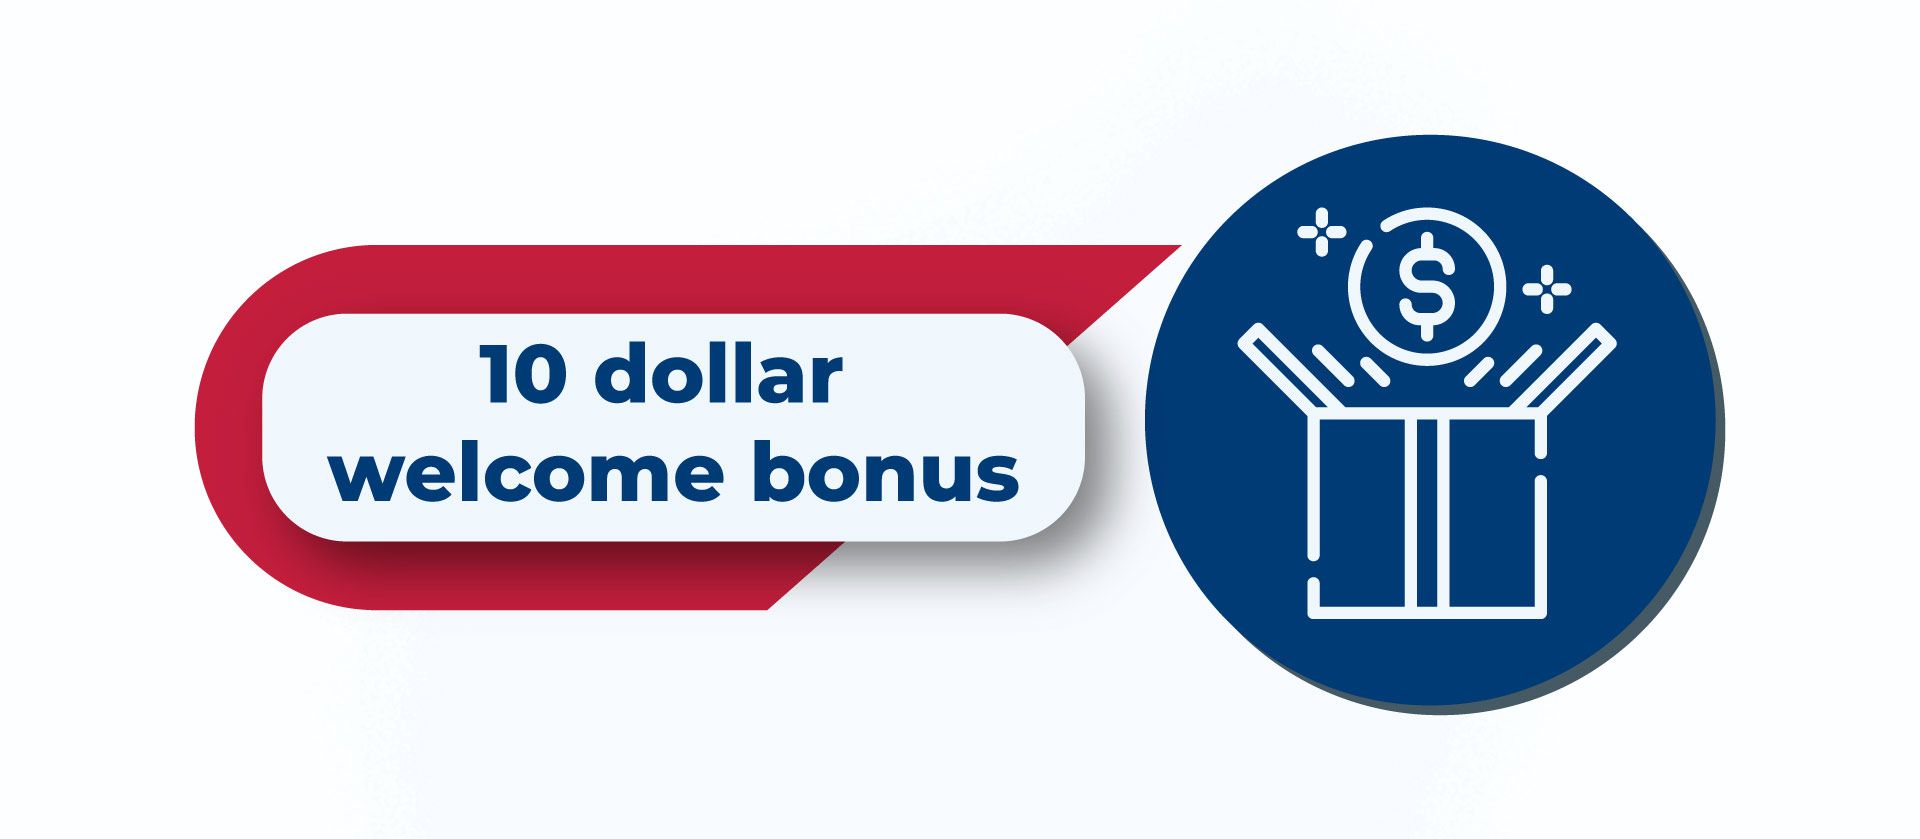 $10 minimum deposit casino welcome bonus in Canada.